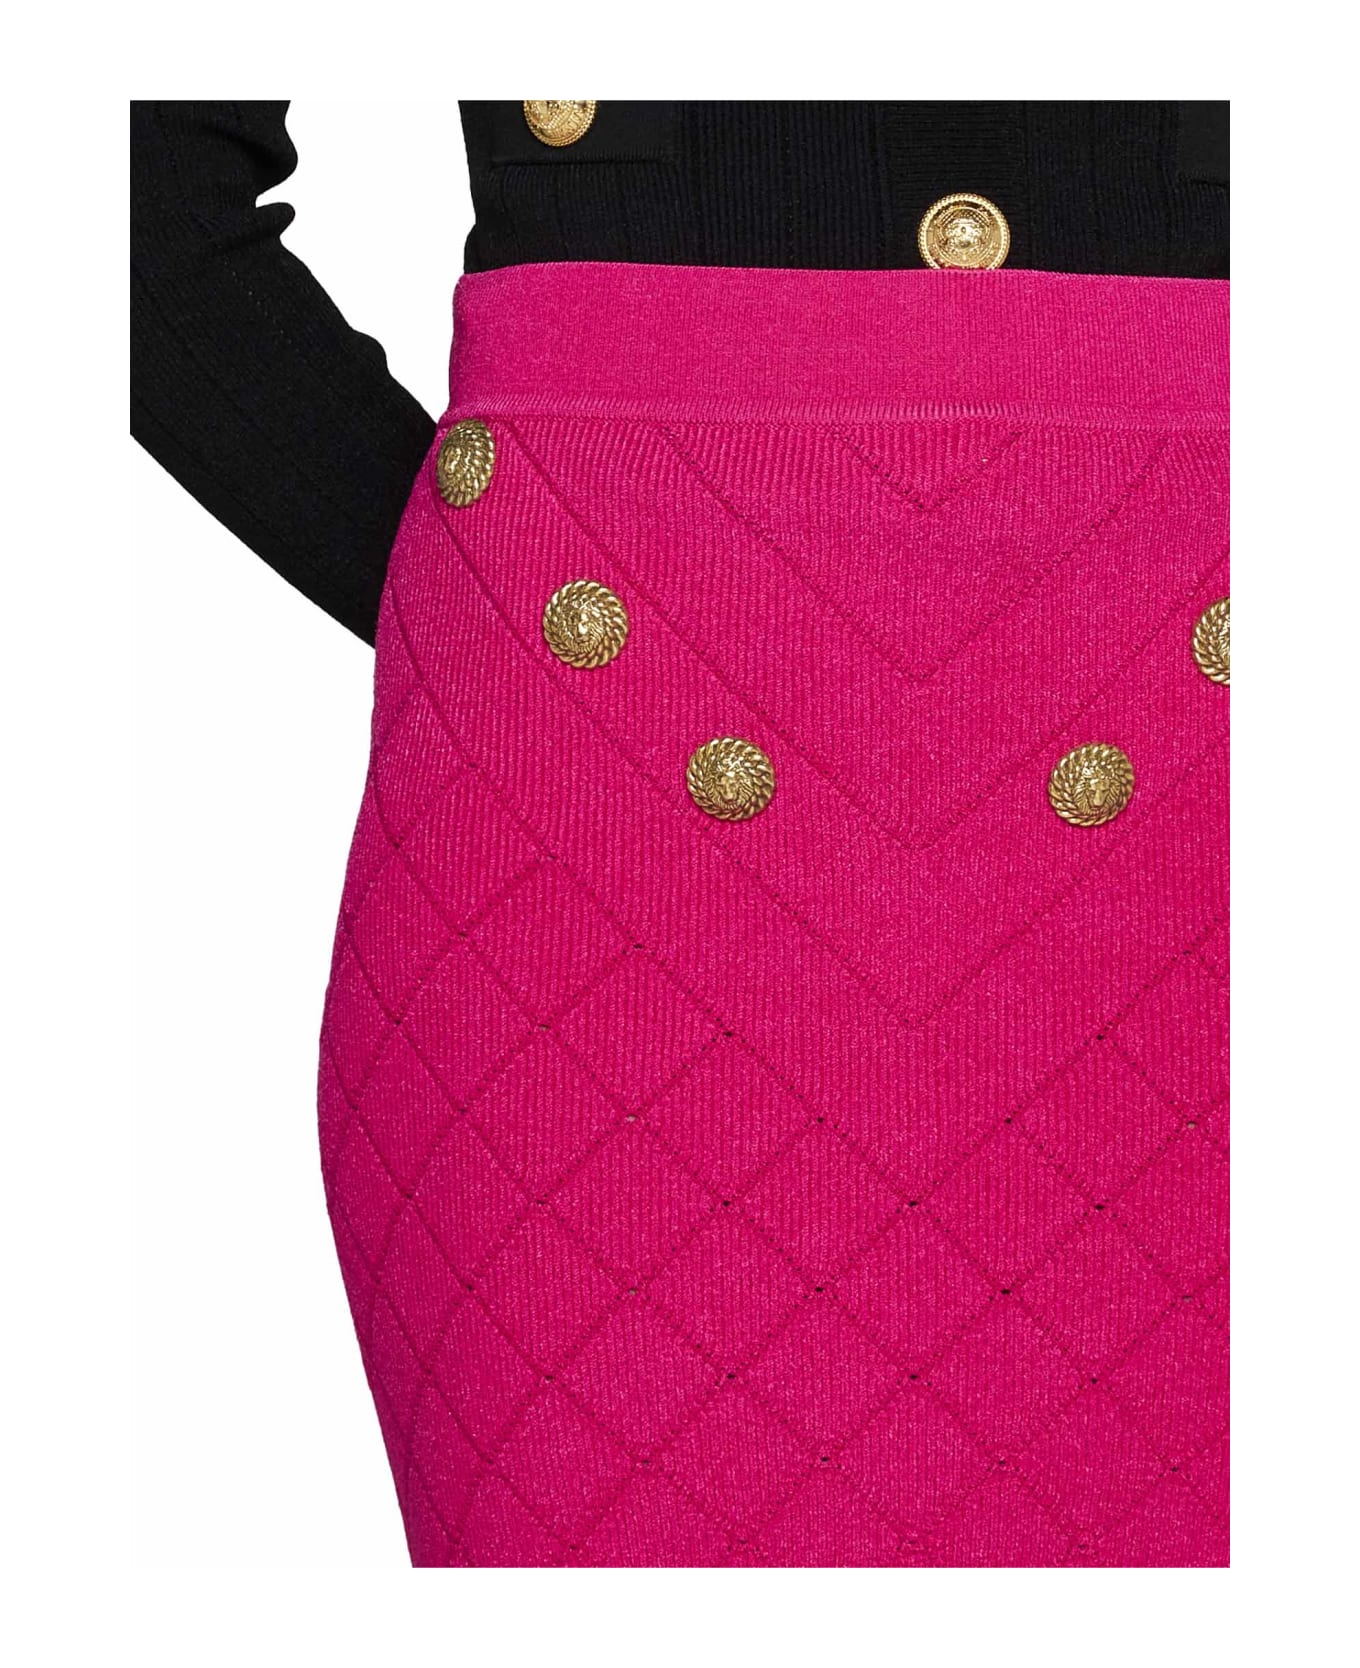 Balmain 6-button Knit Skirt - Pink